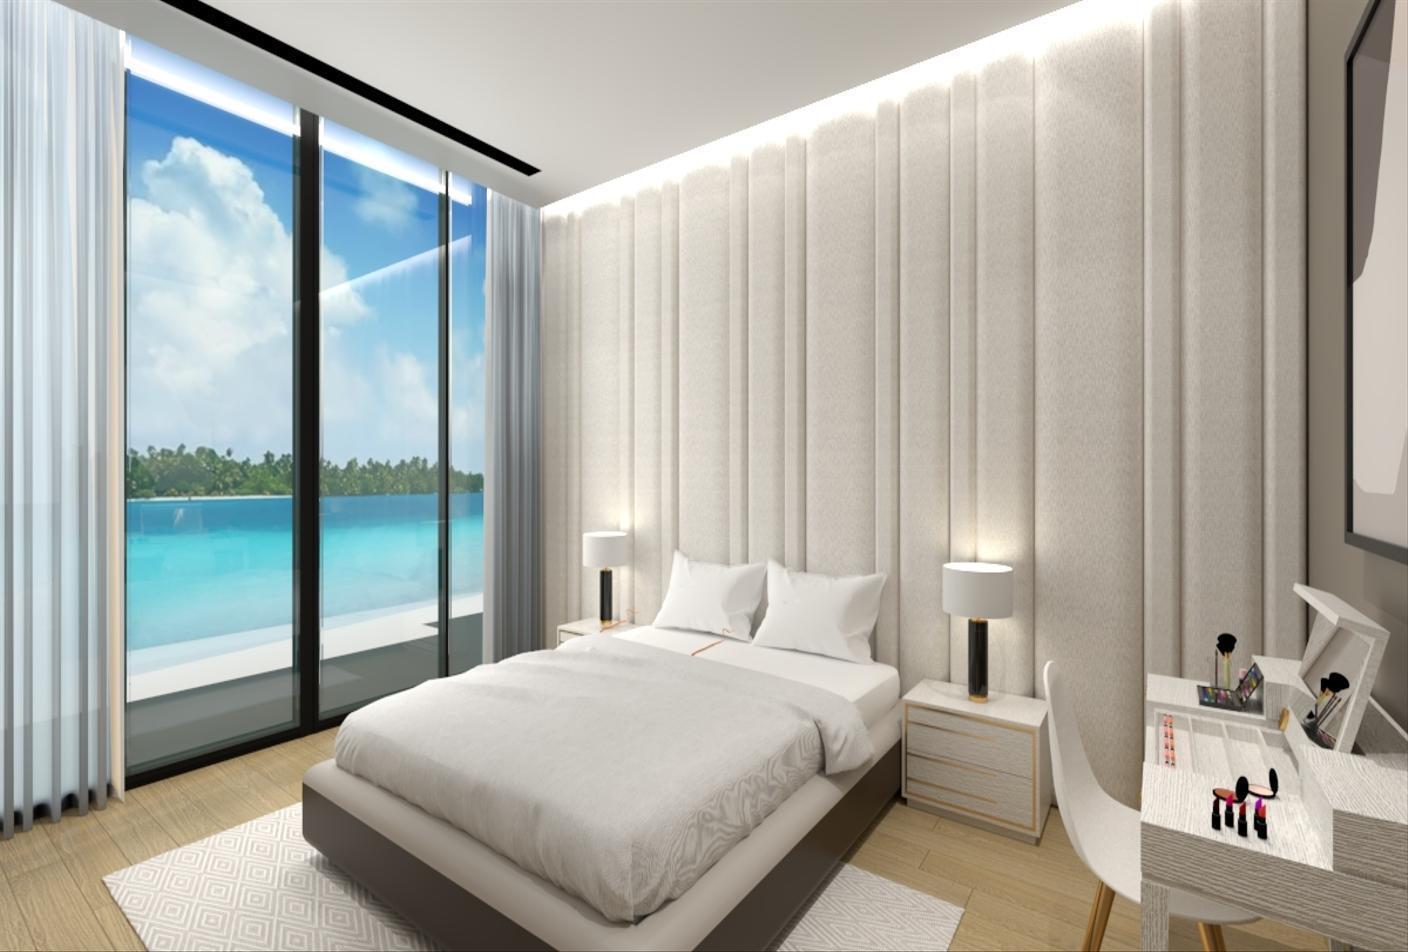 1 bed, 2 bath Hotel & Hotel Apartment for sale in One Reem Island, Shams Abu Dhabi, Al Reem Island, Abu Dhabi for price AED 1743000 